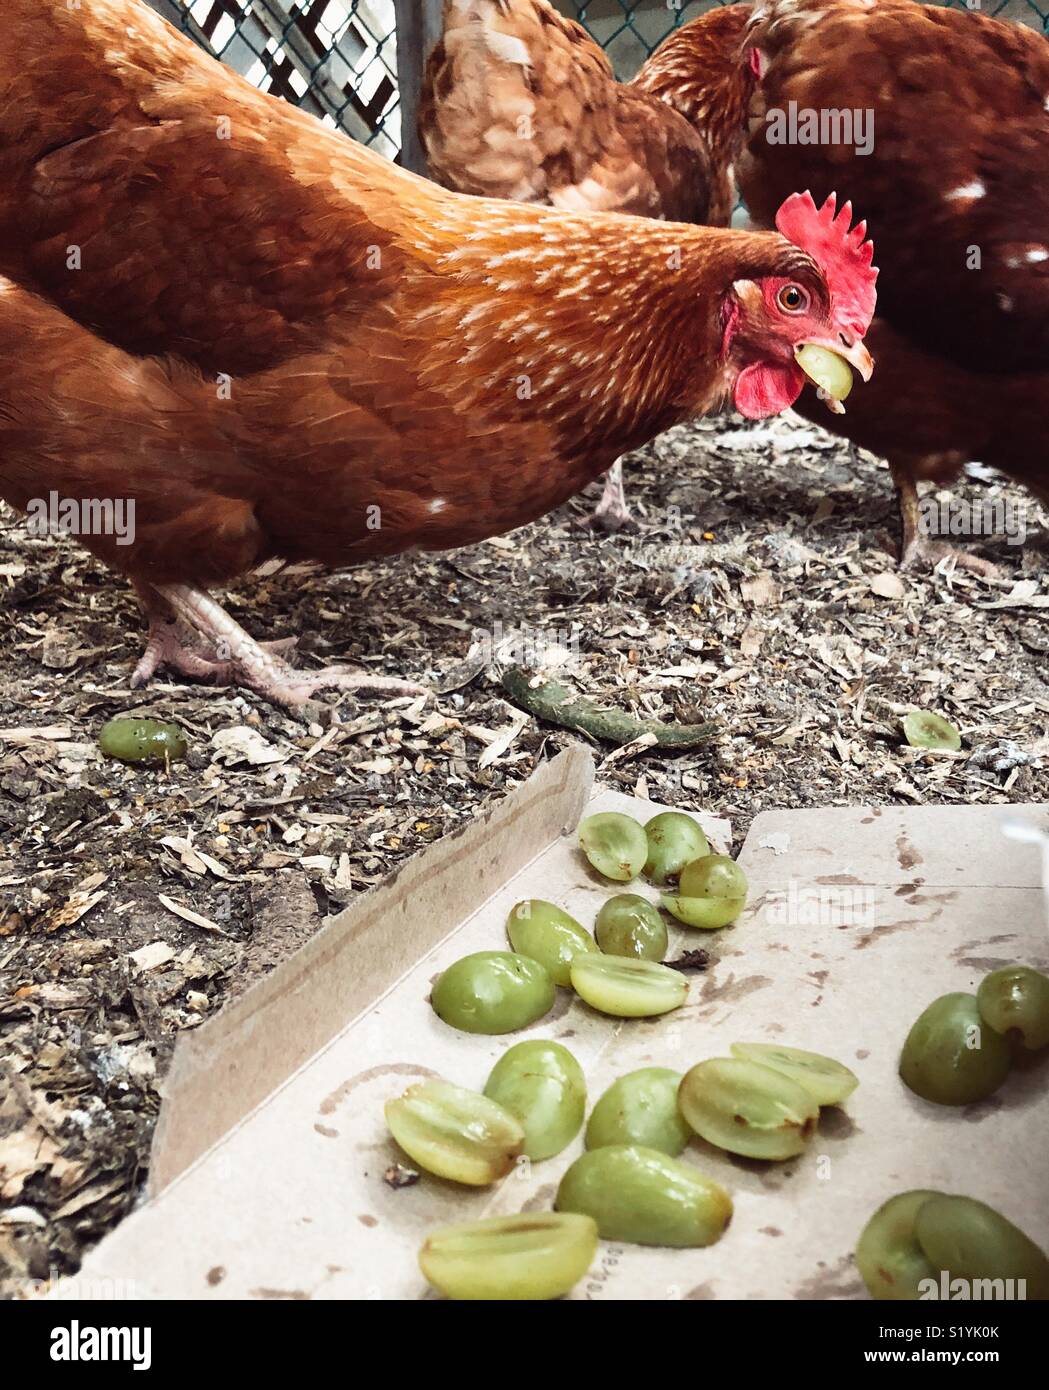 Polli mangiare uva verde in coop Foto Stock